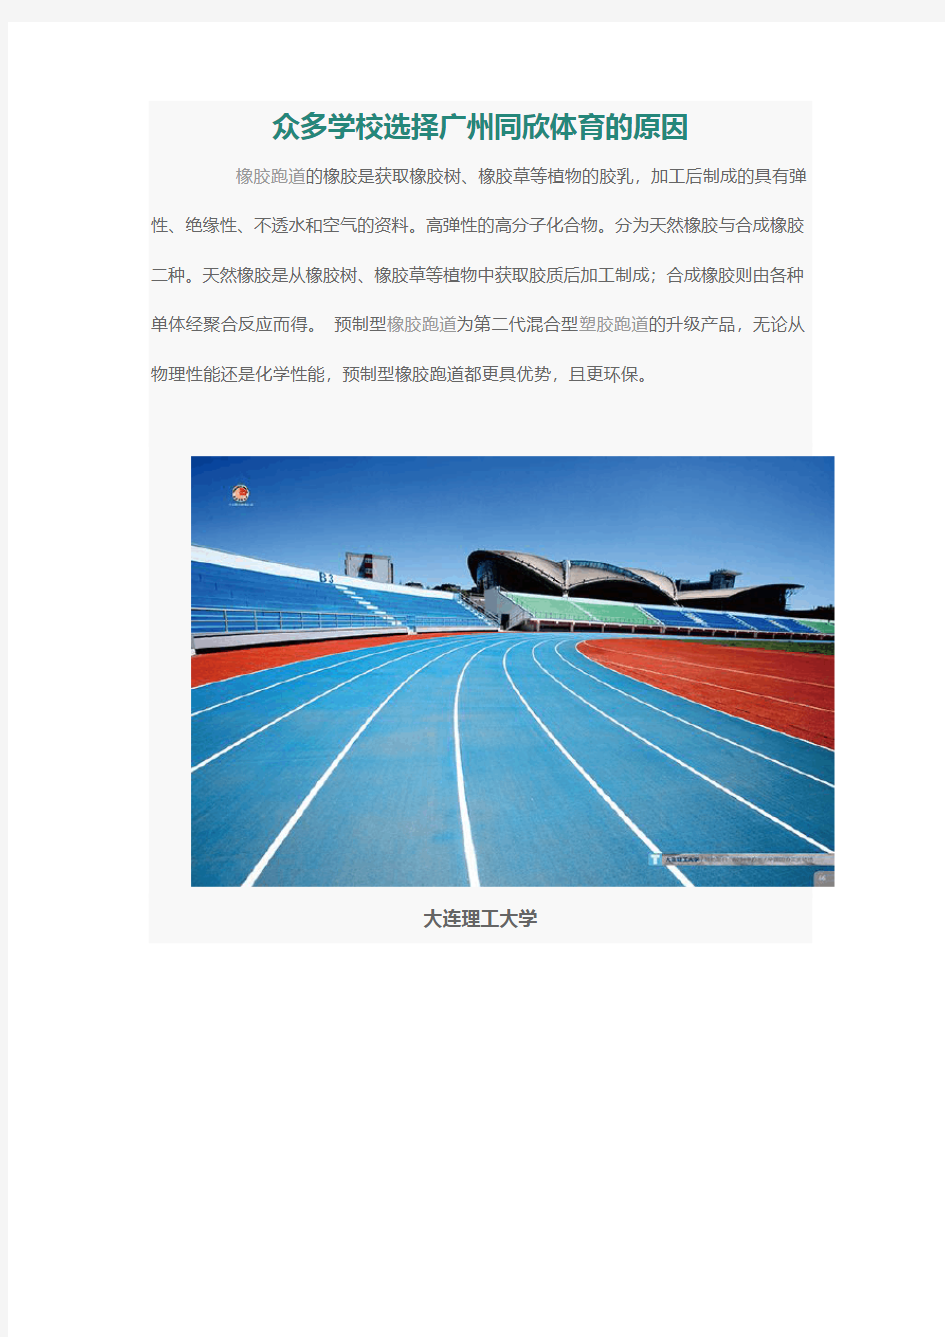 众多学校选择广州同欣体育的原因